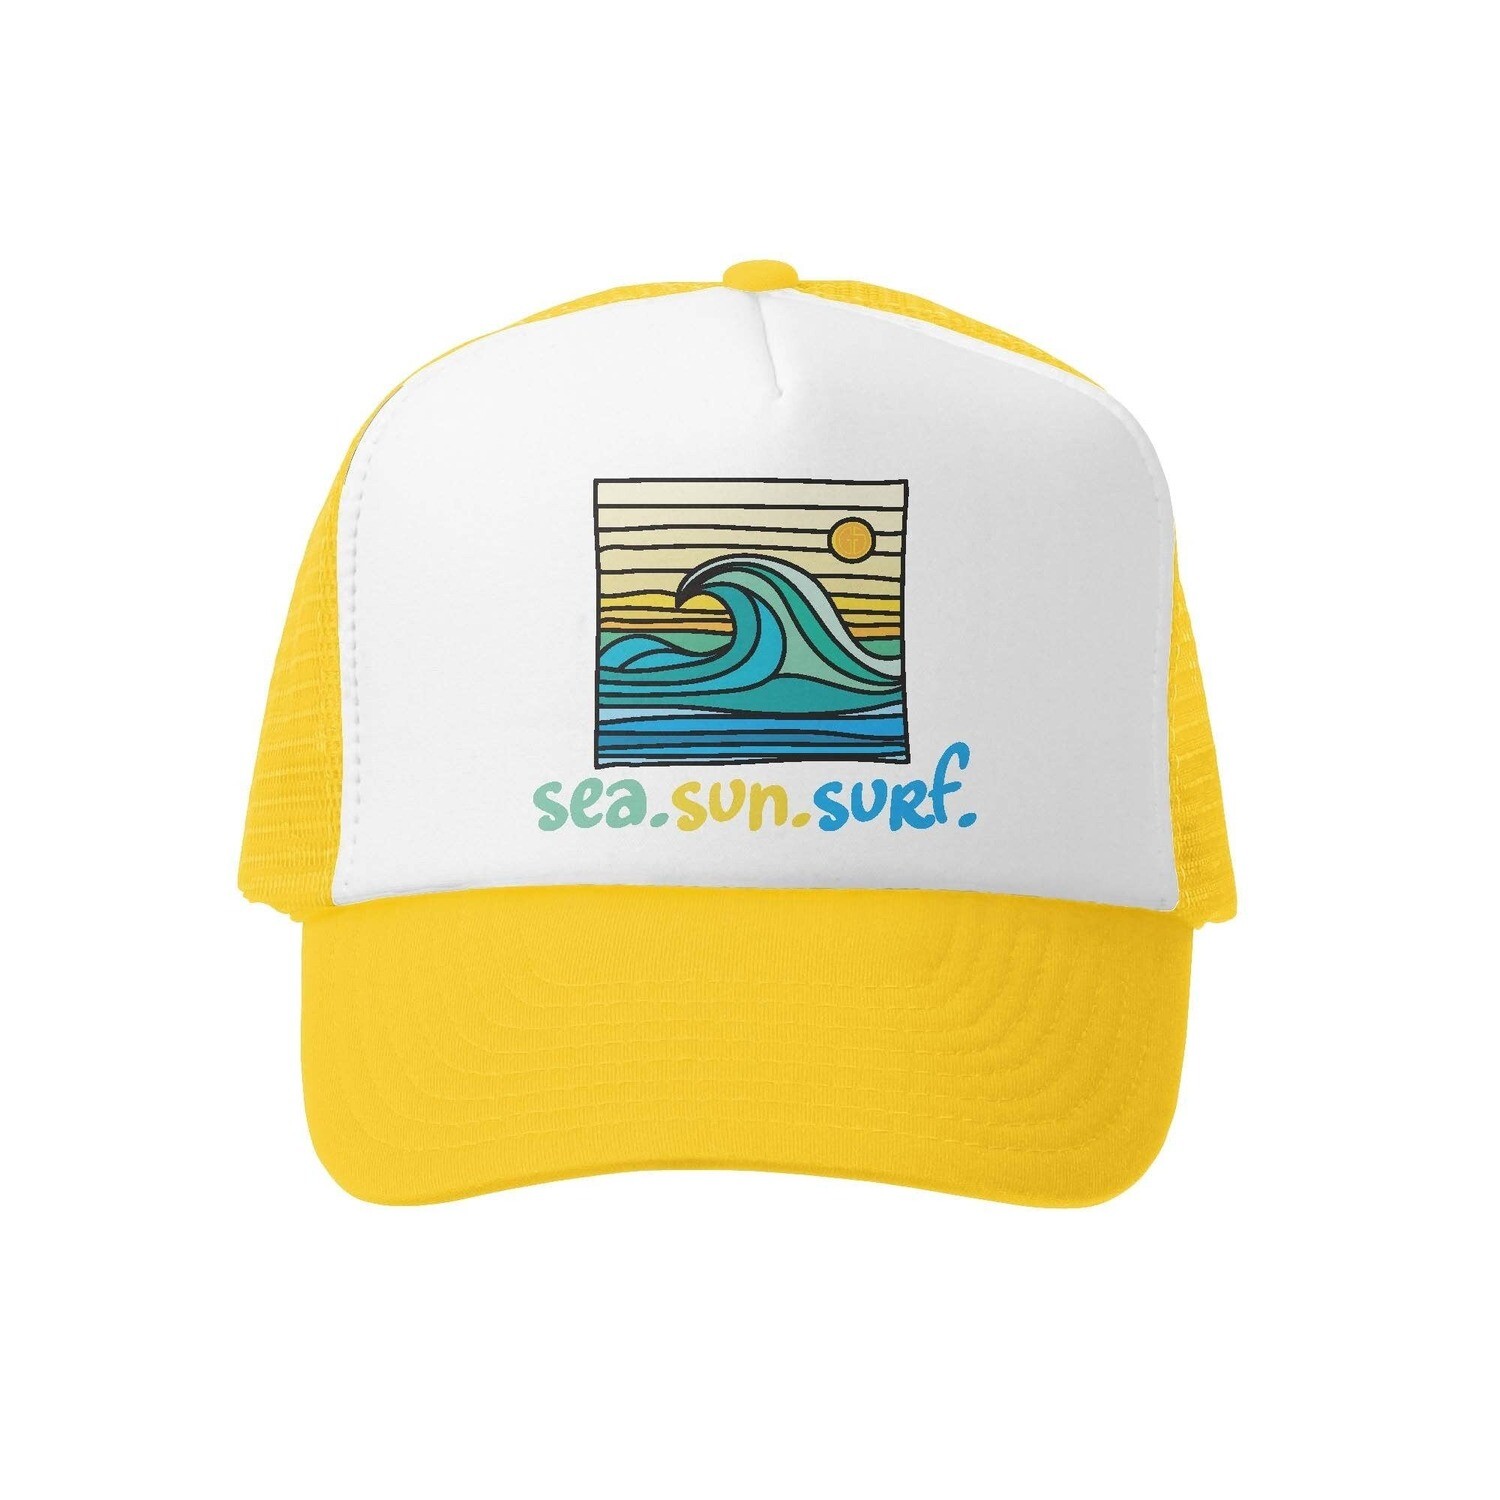 Grom Squad Hat Sea.Sun.Surf - Yellow